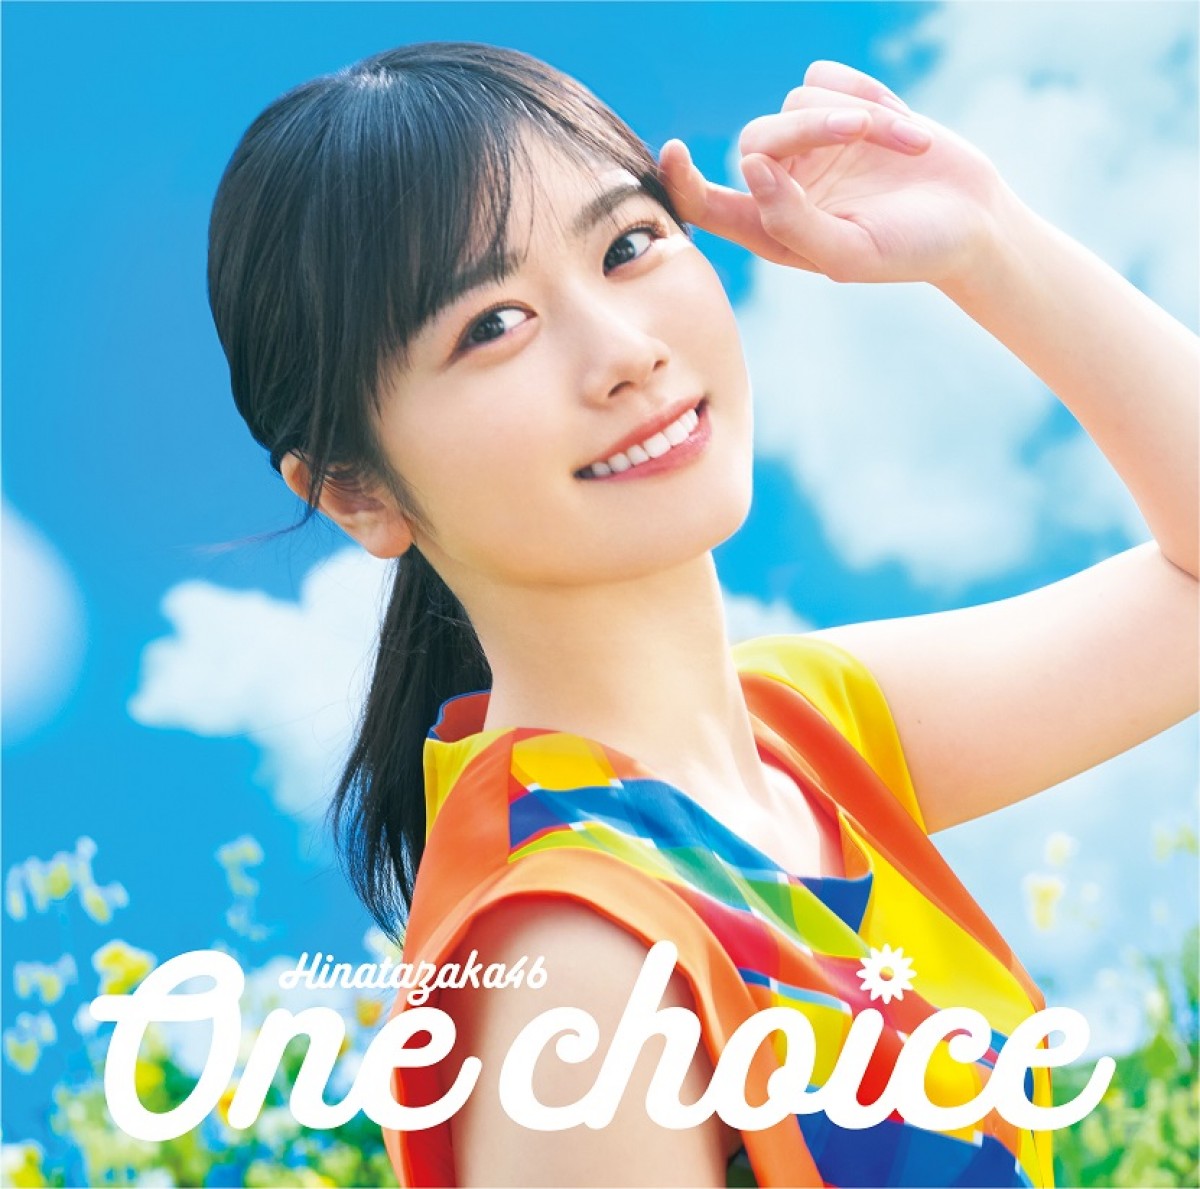 日向坂46、9thシングル「One choice」ジャケット写真公開　テーマは「Sun and Joy」